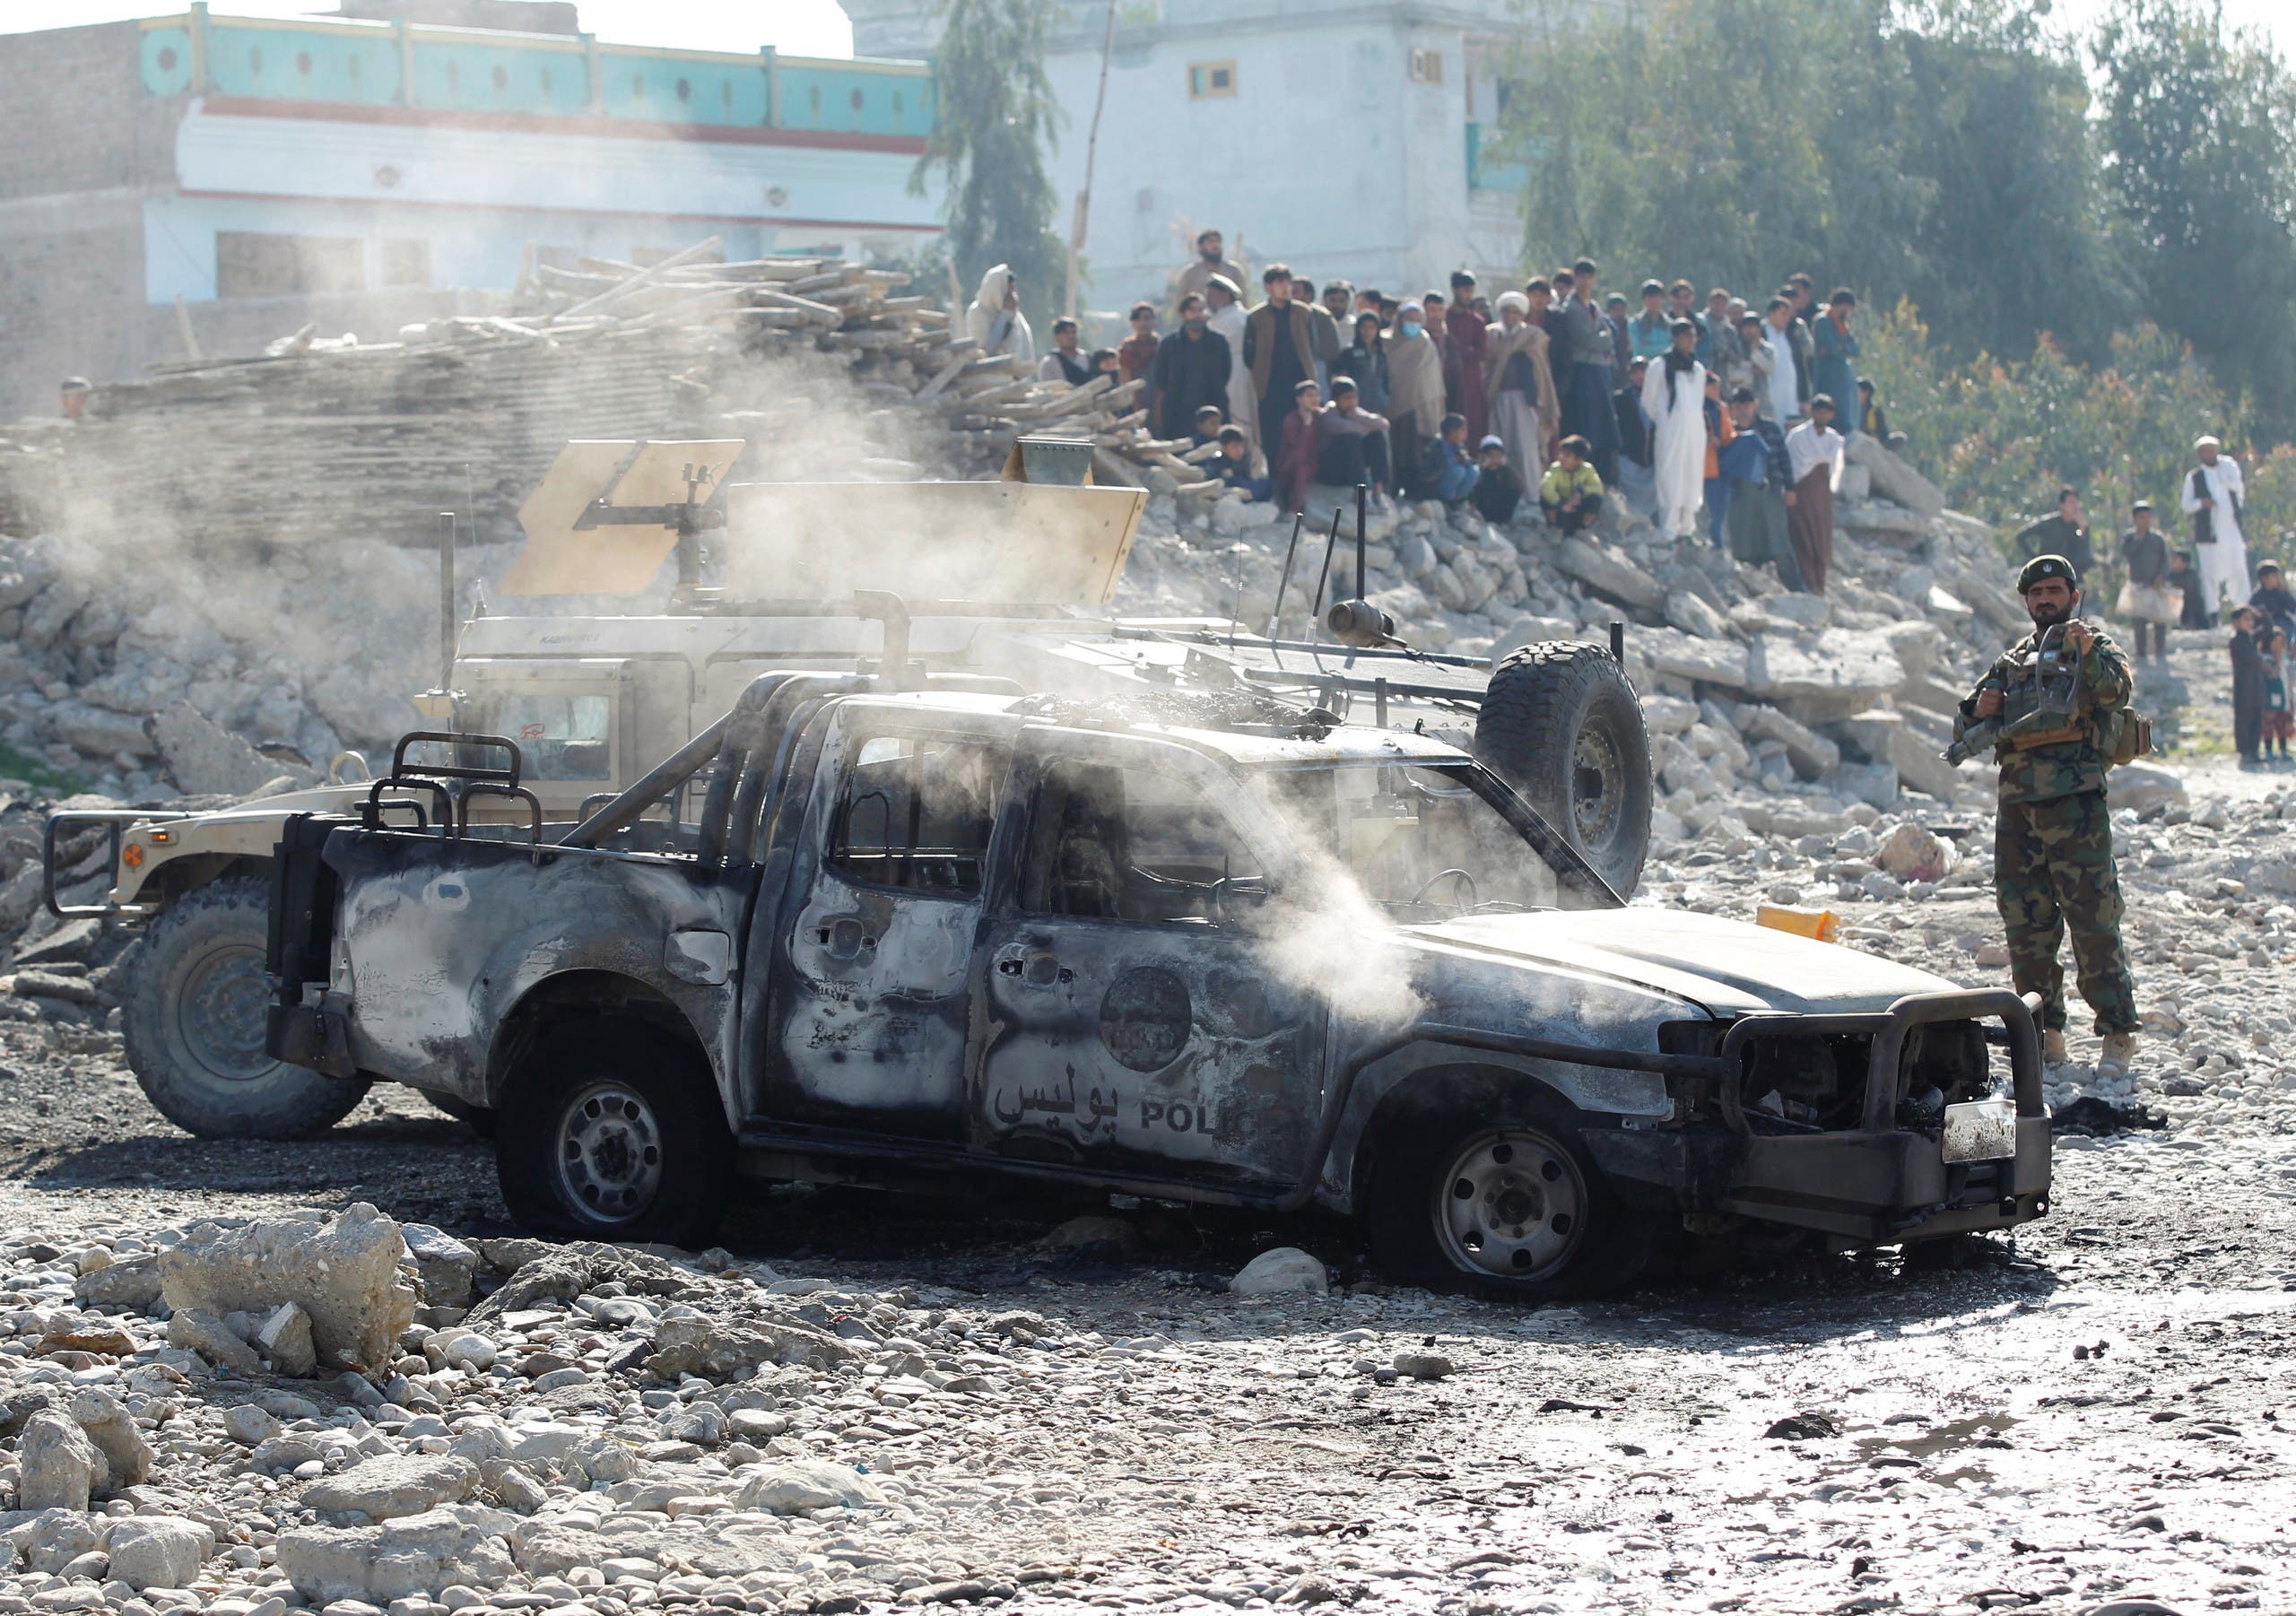 هجوم إرهابي في جلال أباد الخميس الماضي